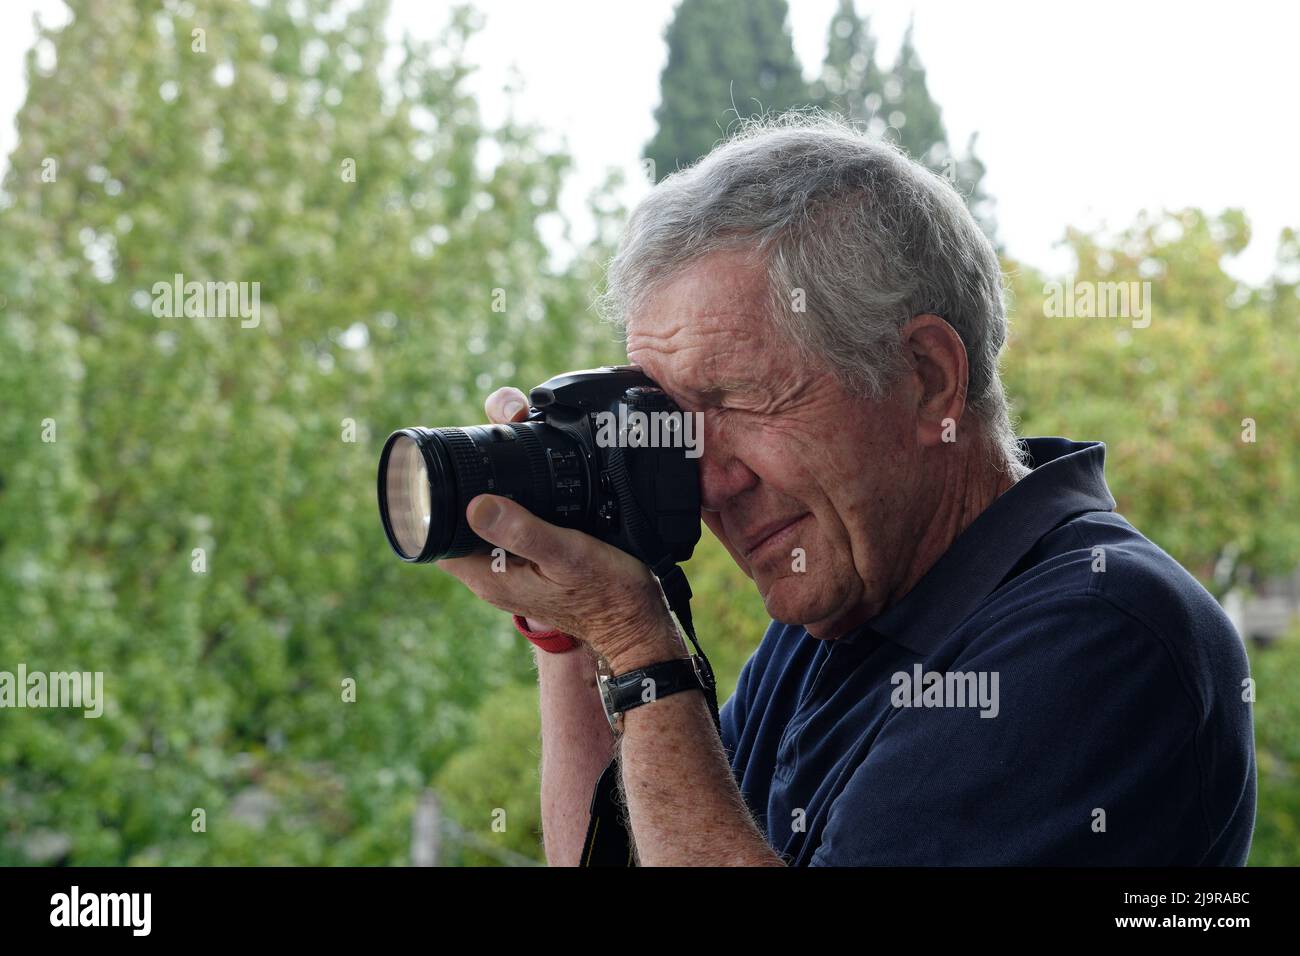 Fotografo maschile anziano che utilizza una fotocamera Reflex a obiettivo singolo tenuta all'occhio destro. Vista lato sinistro. Camicia blu scuro e sfondo verde sfocato dell'albero. Foto Stock